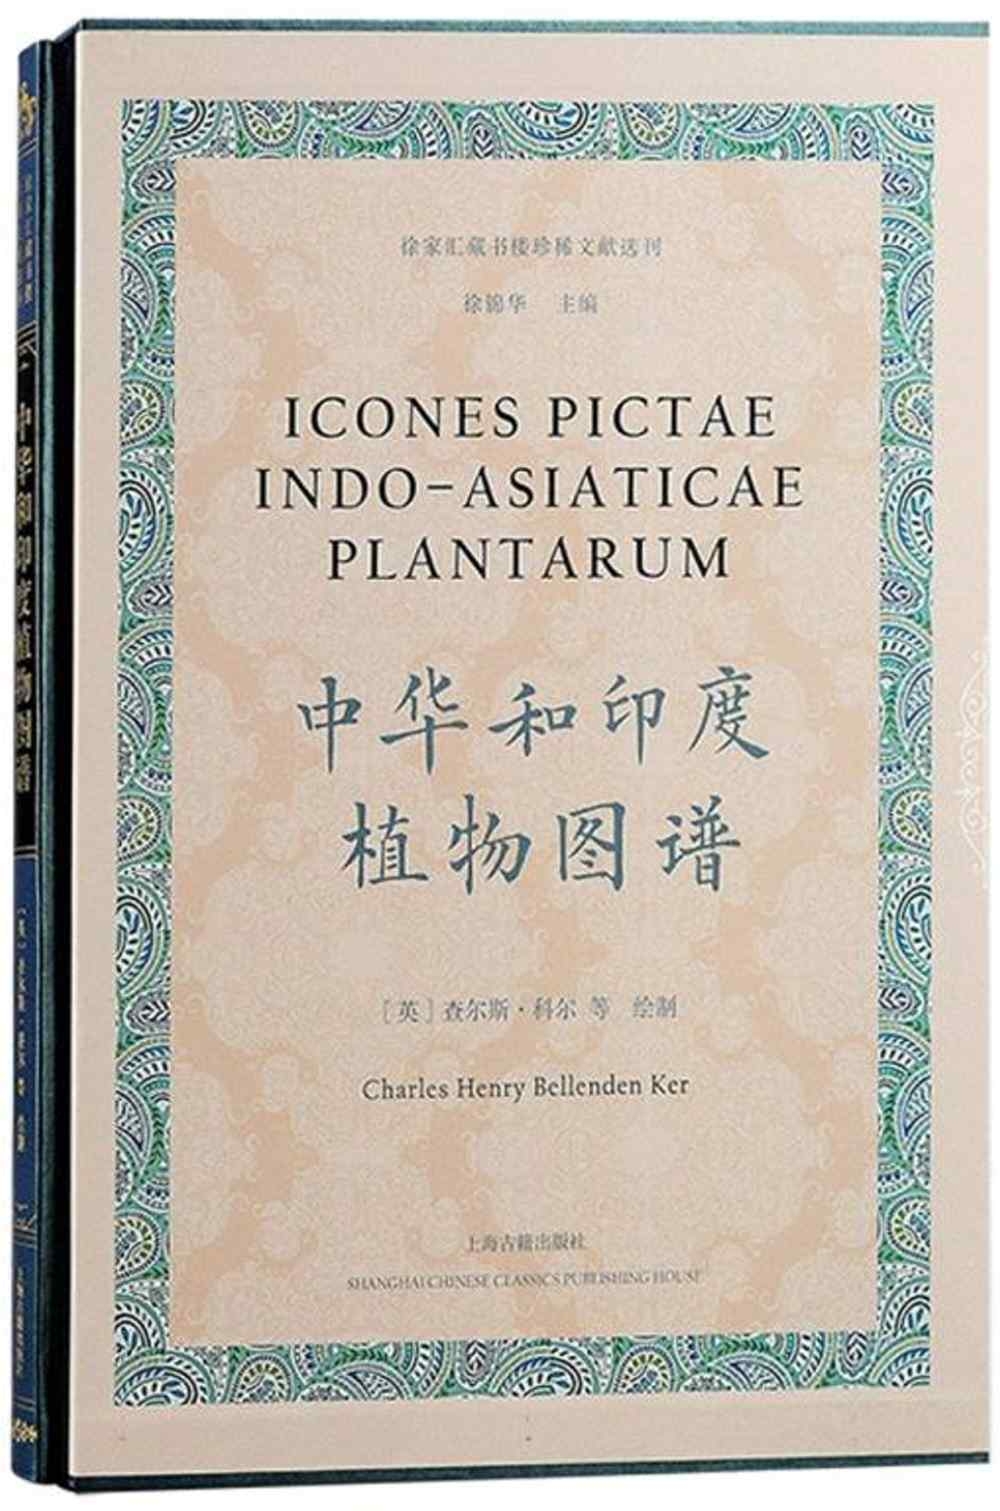 中華和印度植物圖譜